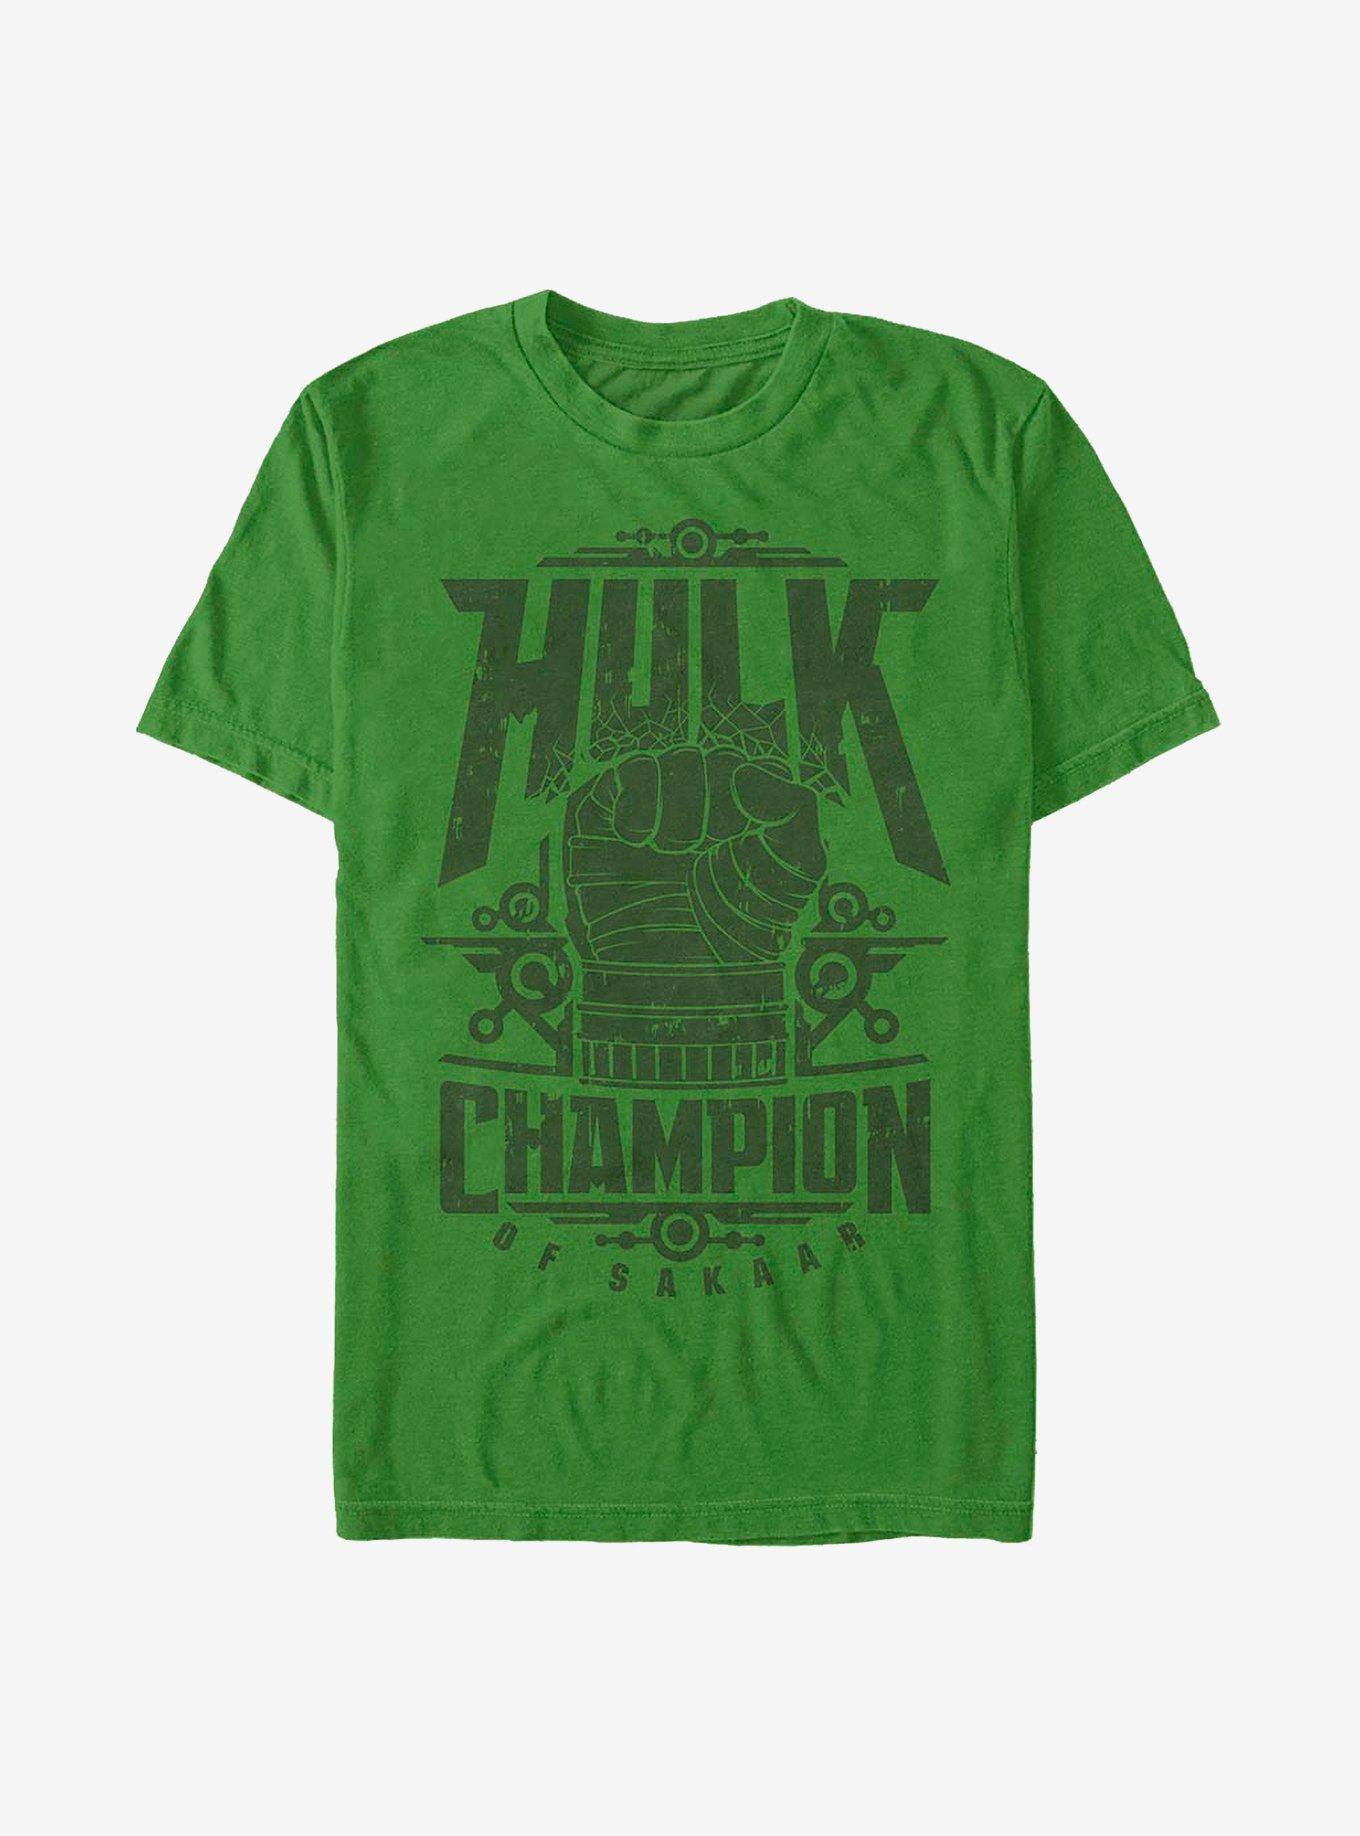 Marvel The Hulk Champ T-Shirt